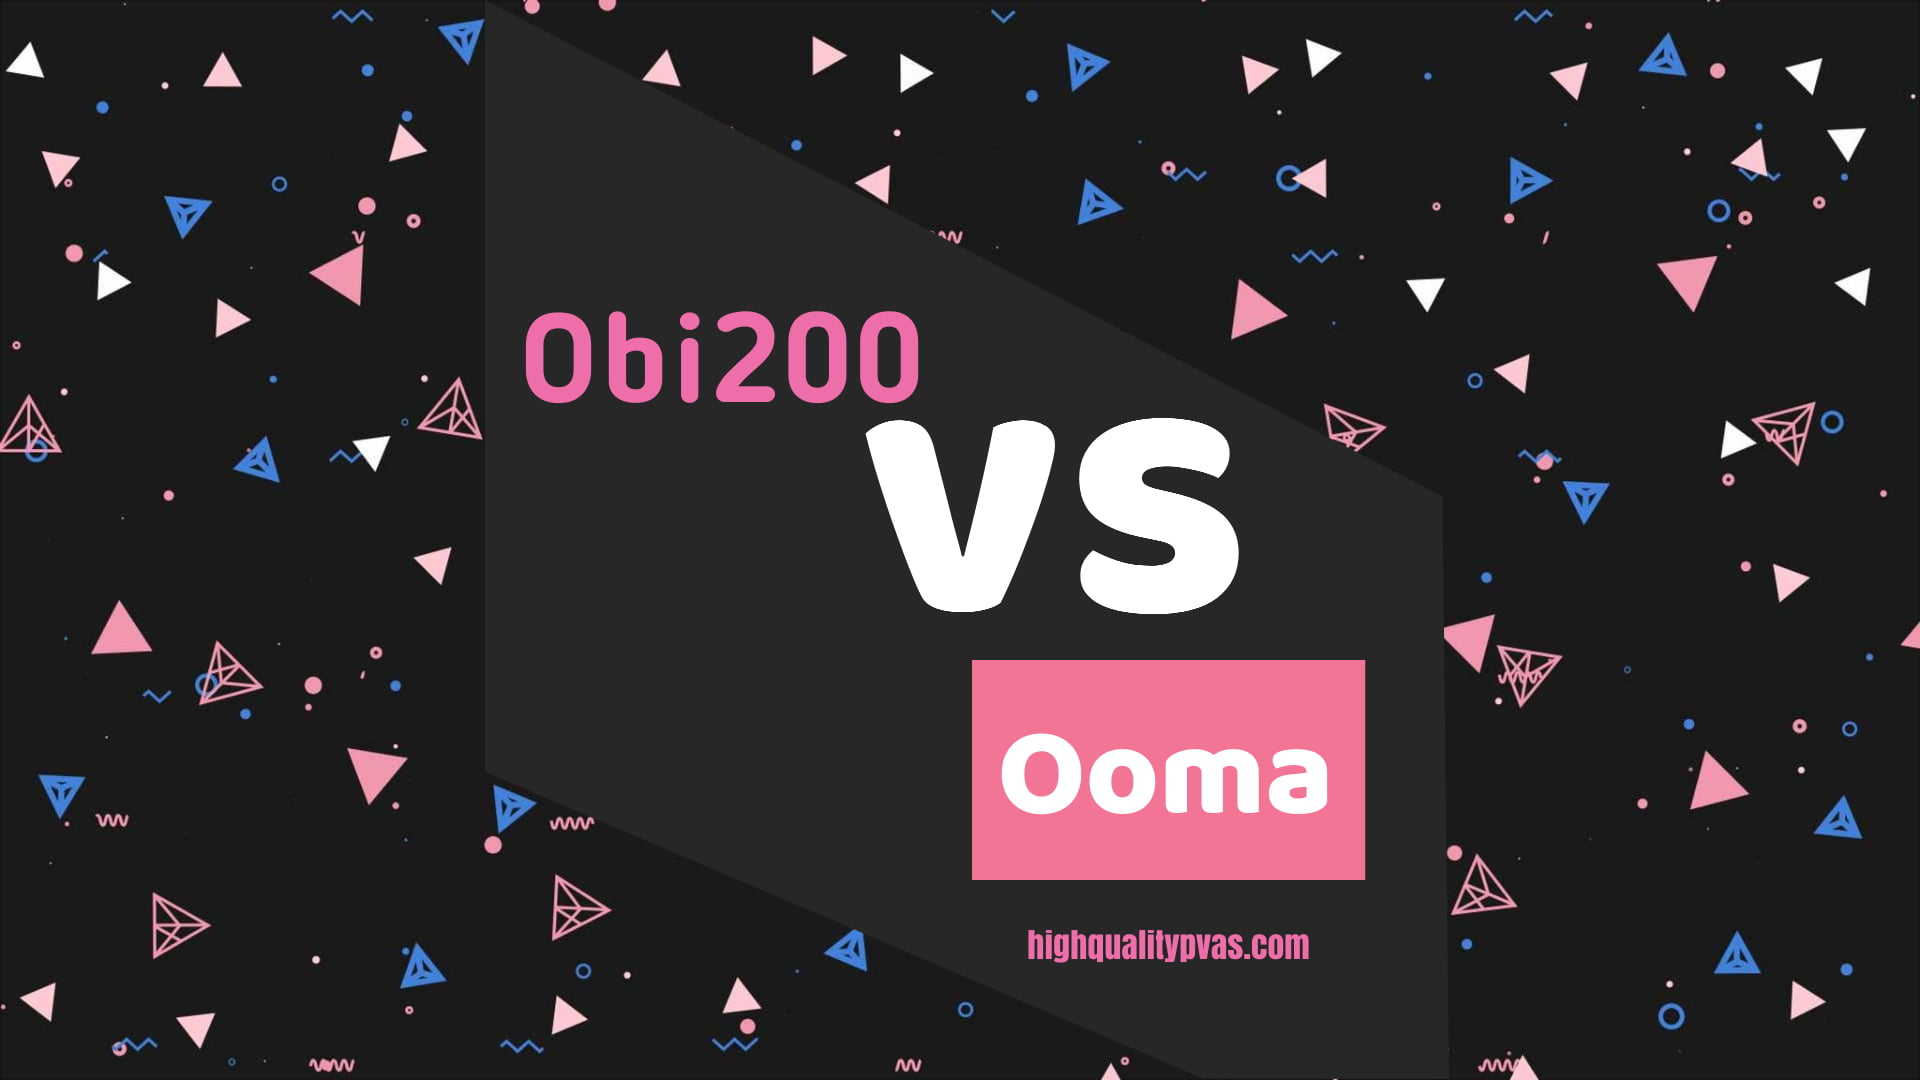 Obi200 vs Ooma